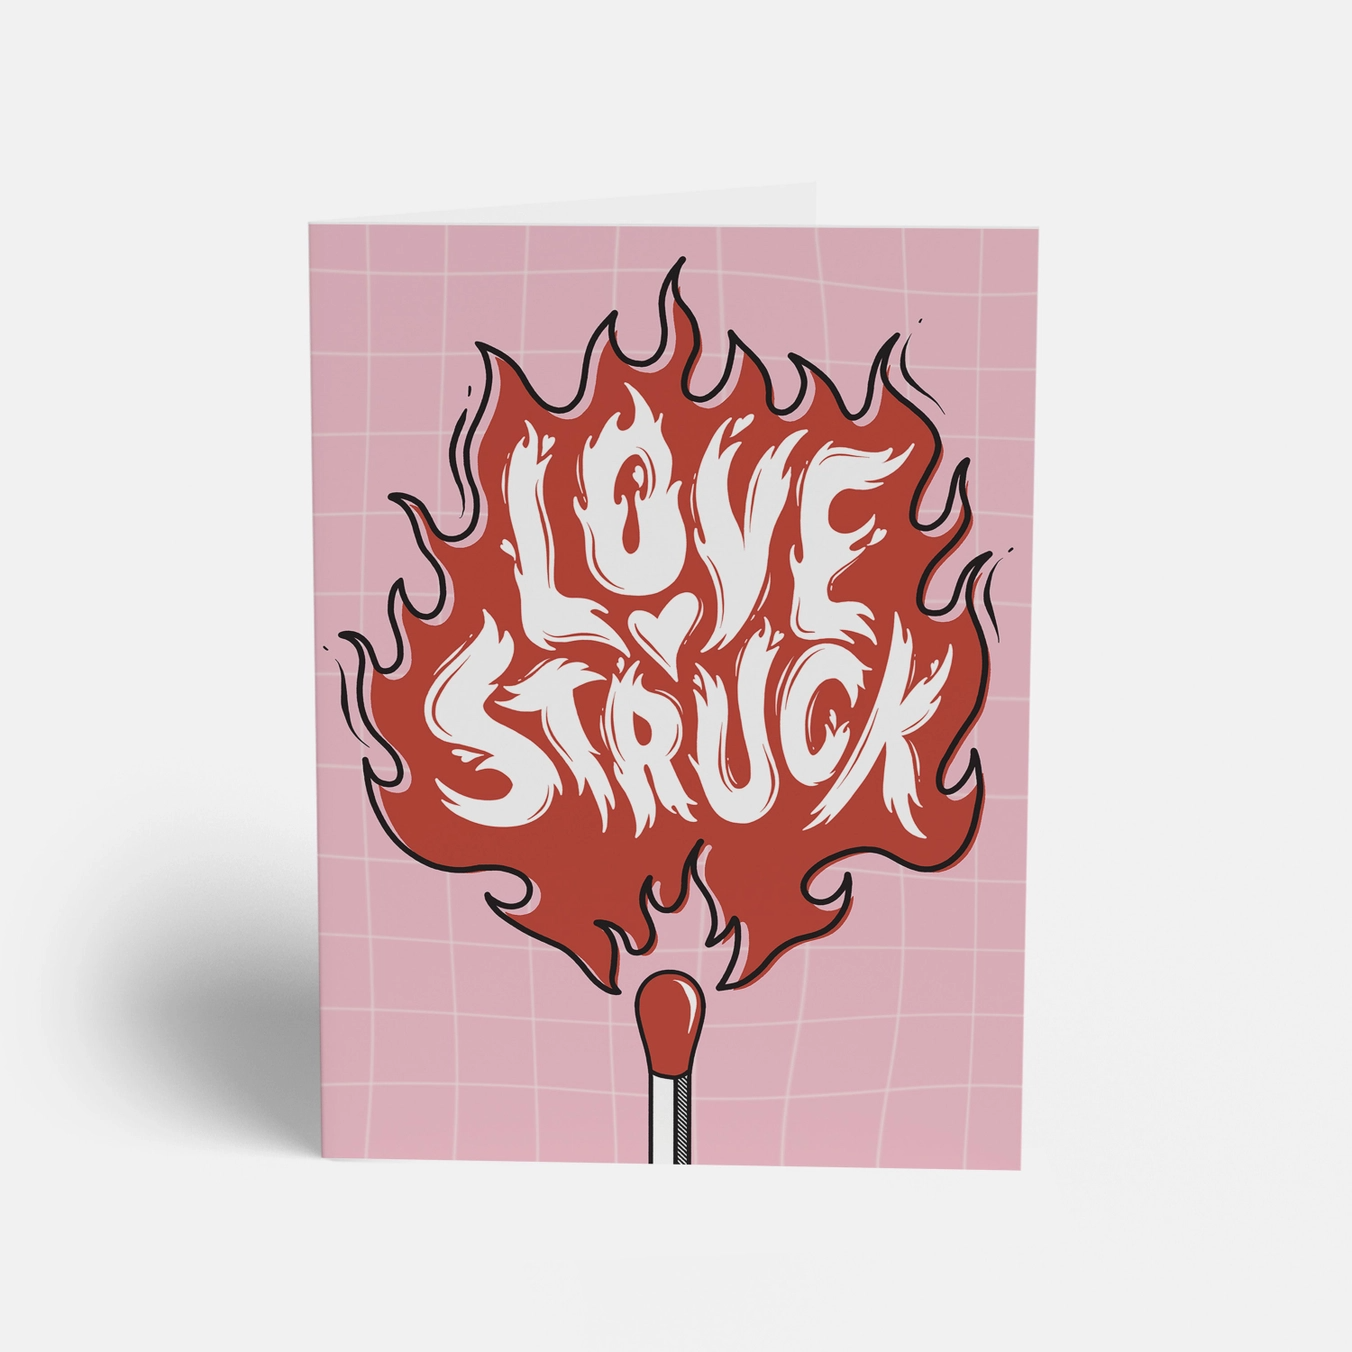 Love Struck Love Card